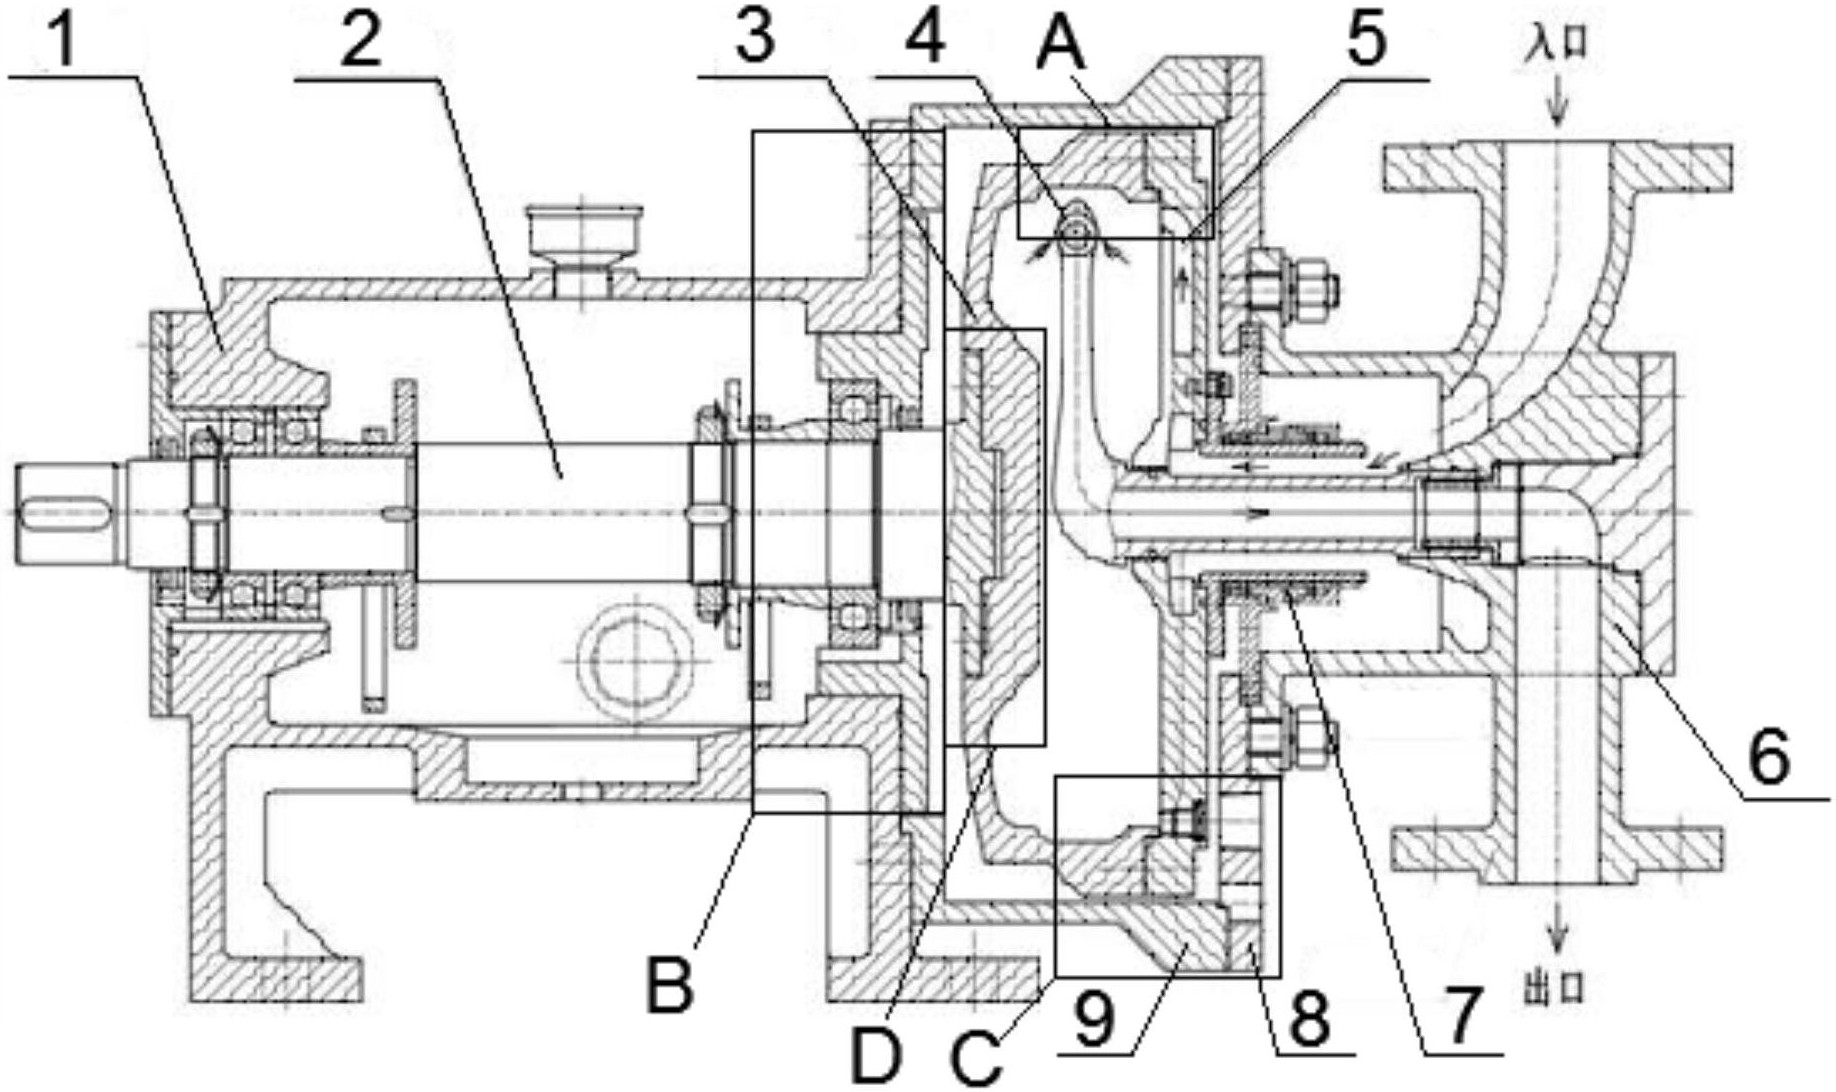 包括泵体以及与所述泵体密封连接的泵盖,所述泵体一端固连有轴承箱;所